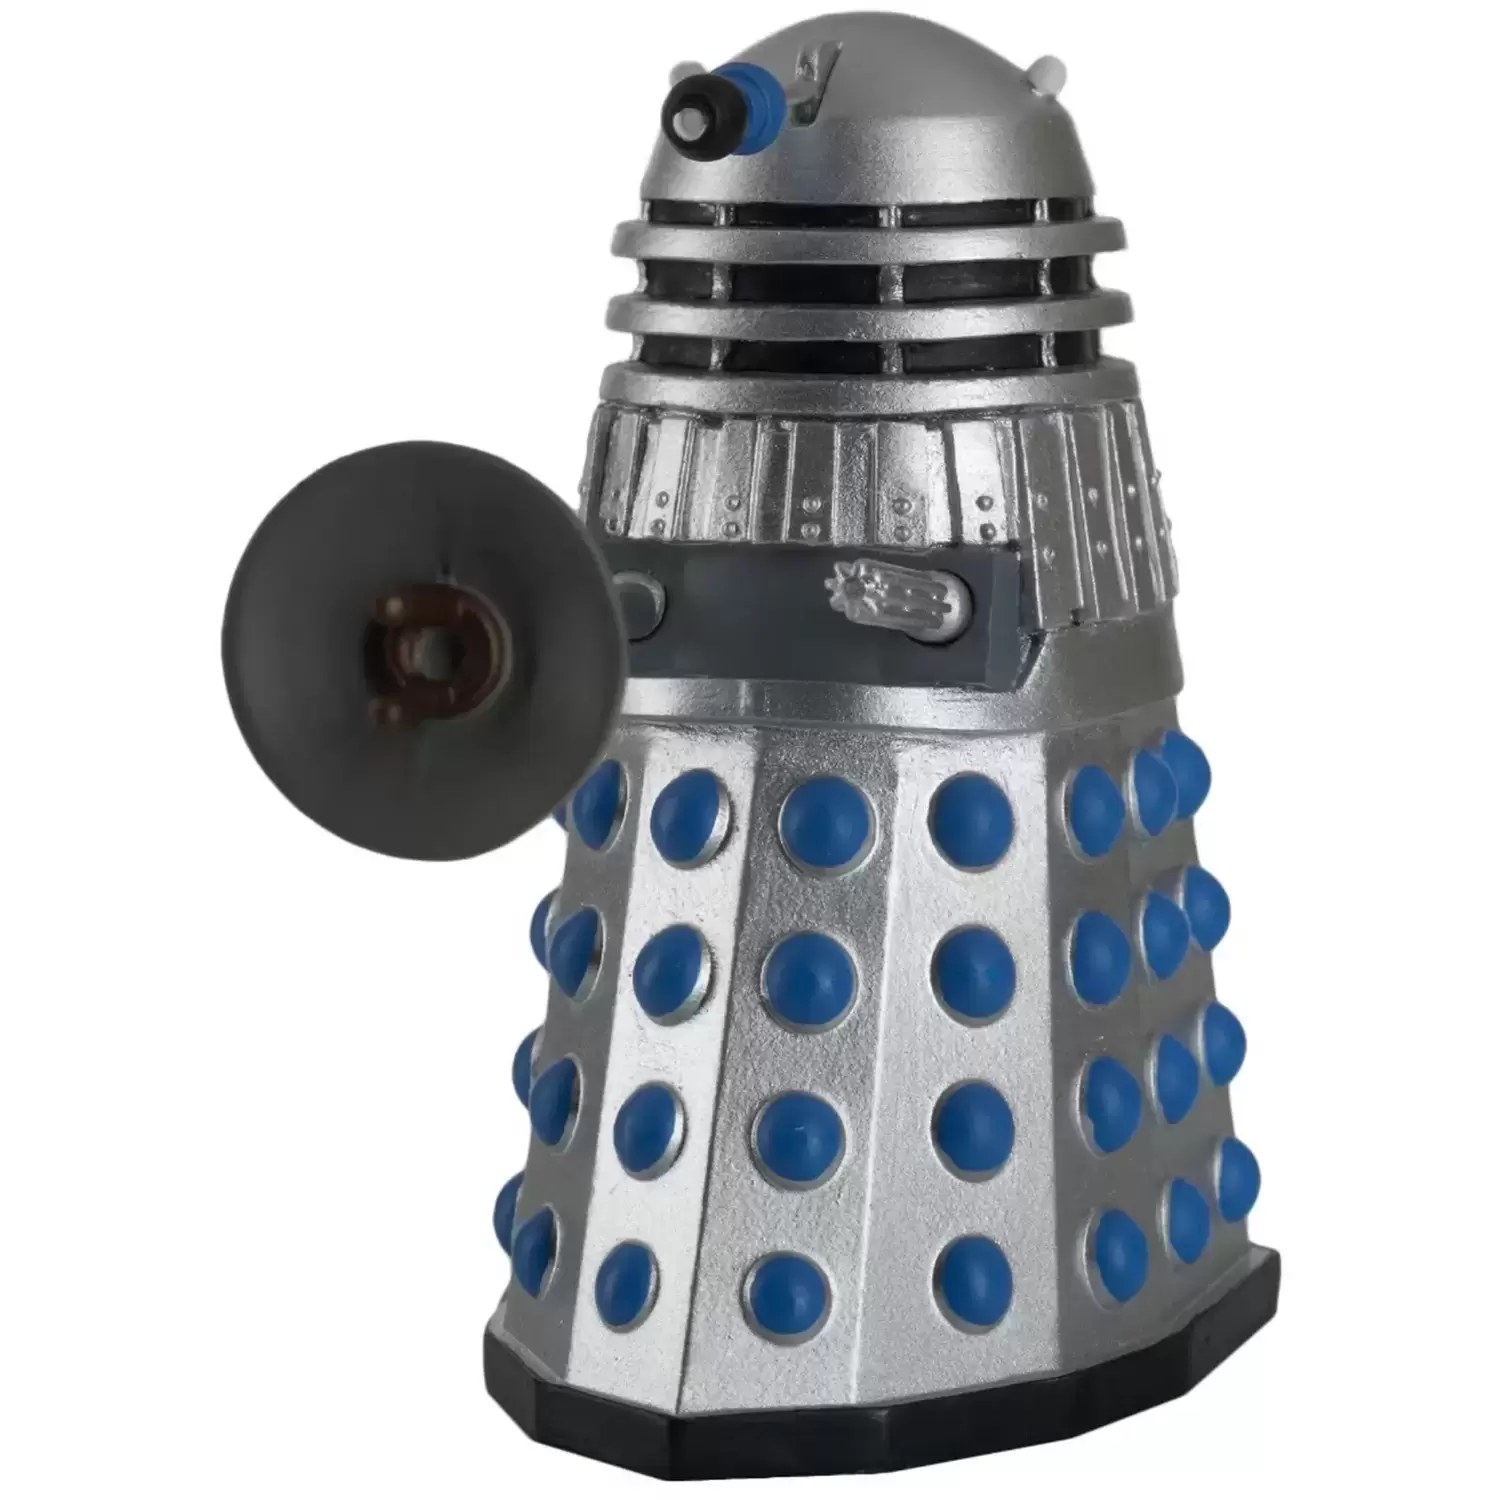 Doctor Who Eaglemoss - Figurine de l’Electrode Unit Dalek